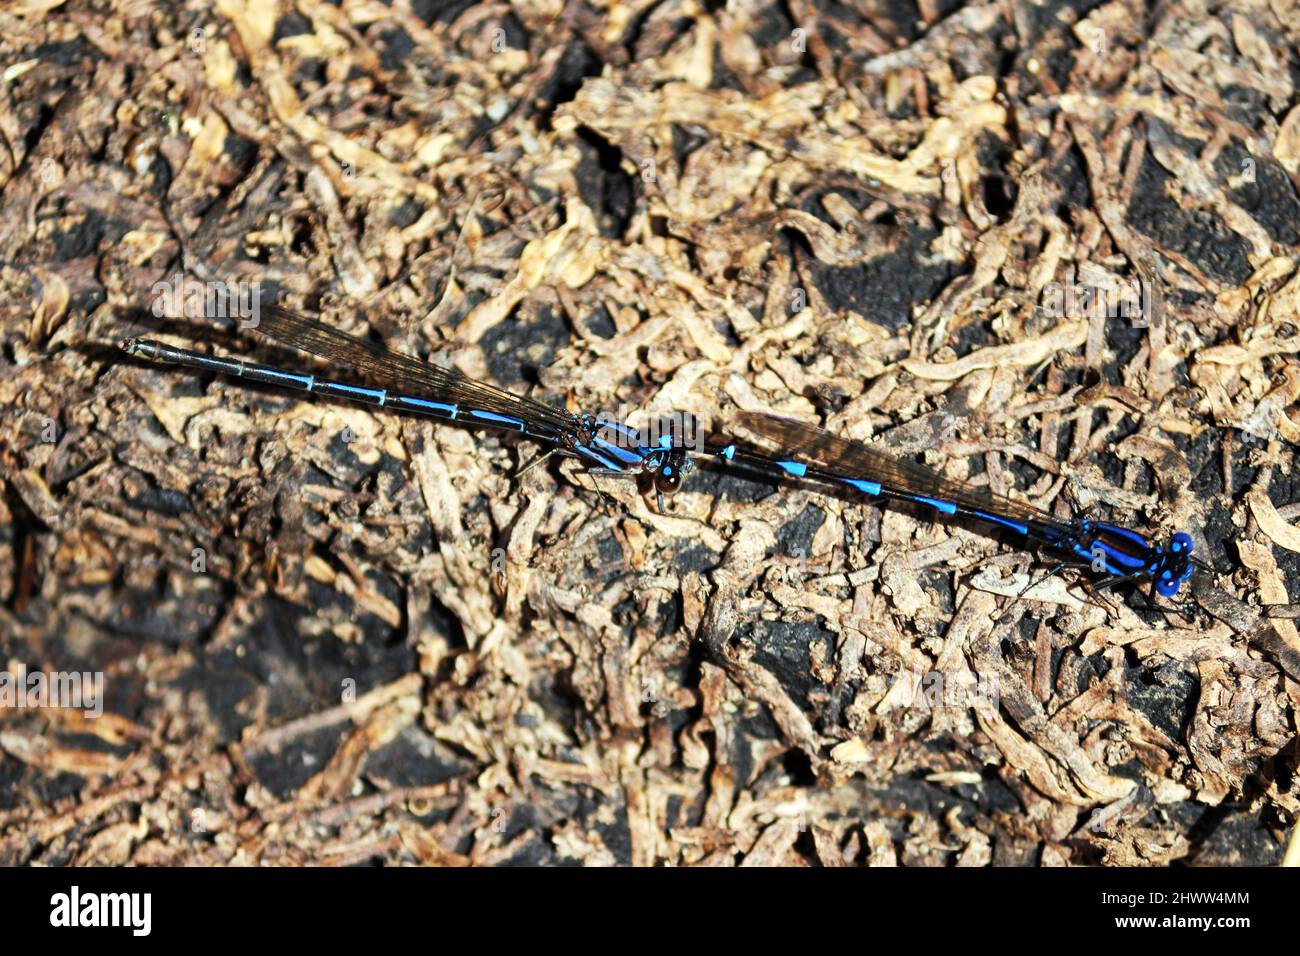 Due libellule arroccate sulla terra di un fiume, si stanno avvicinando per l'accoppiamento, sono libellule in sfumature di blu e nero. La foto è angolata fr Foto Stock